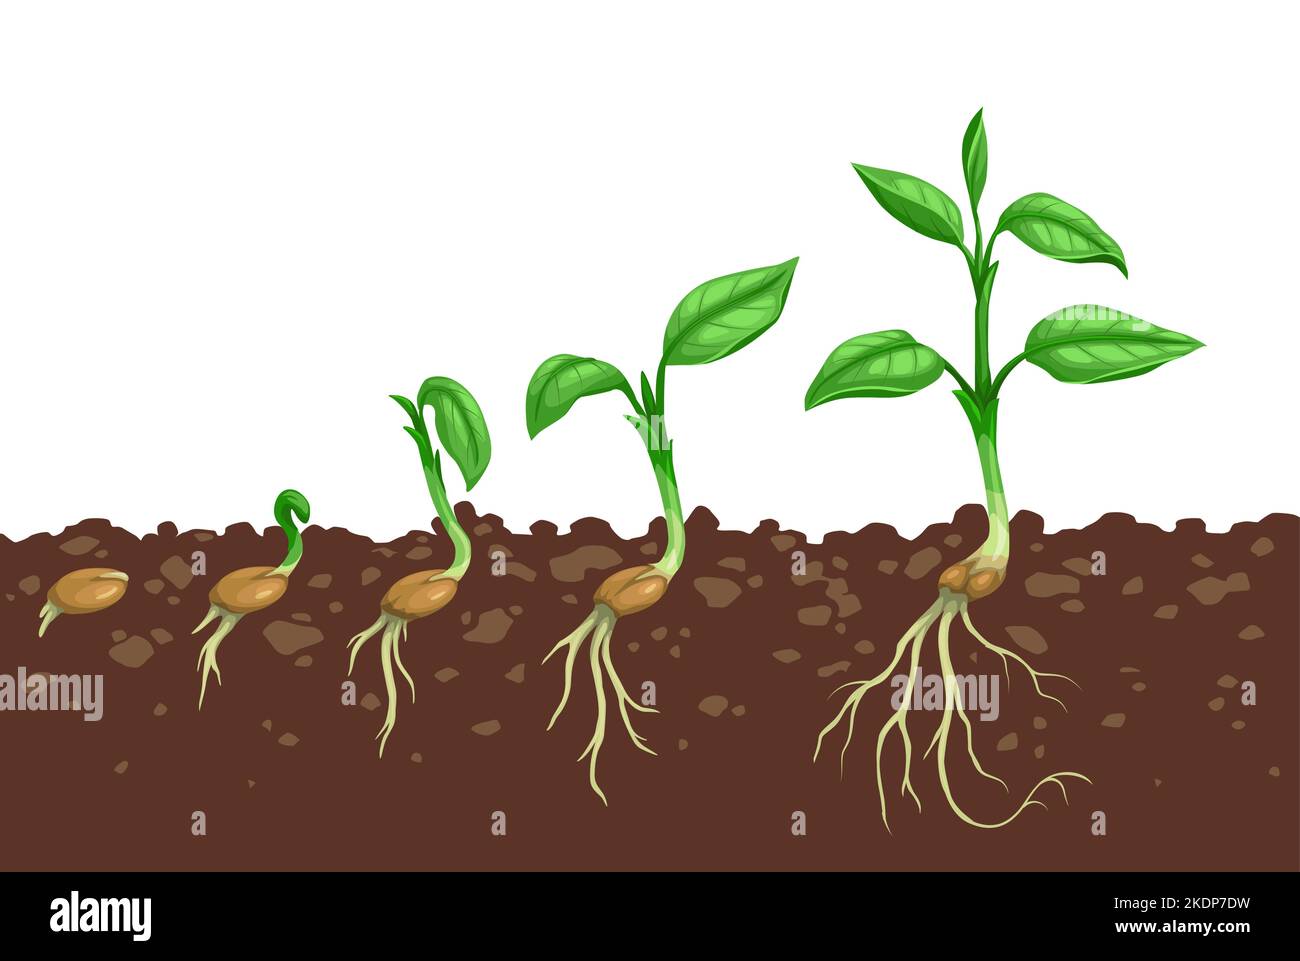 Schritte zum Pflanzenwachstum. Keimung der Samen im Boden. Landwirtschaft Keimling Entwicklungsstufen oder Setzungsschritte, Sprout-Wachstumsprozess mit Samen im Boden, Sämling Wurzeln und Pflanzenblätter auf Stamm Stock Vektor